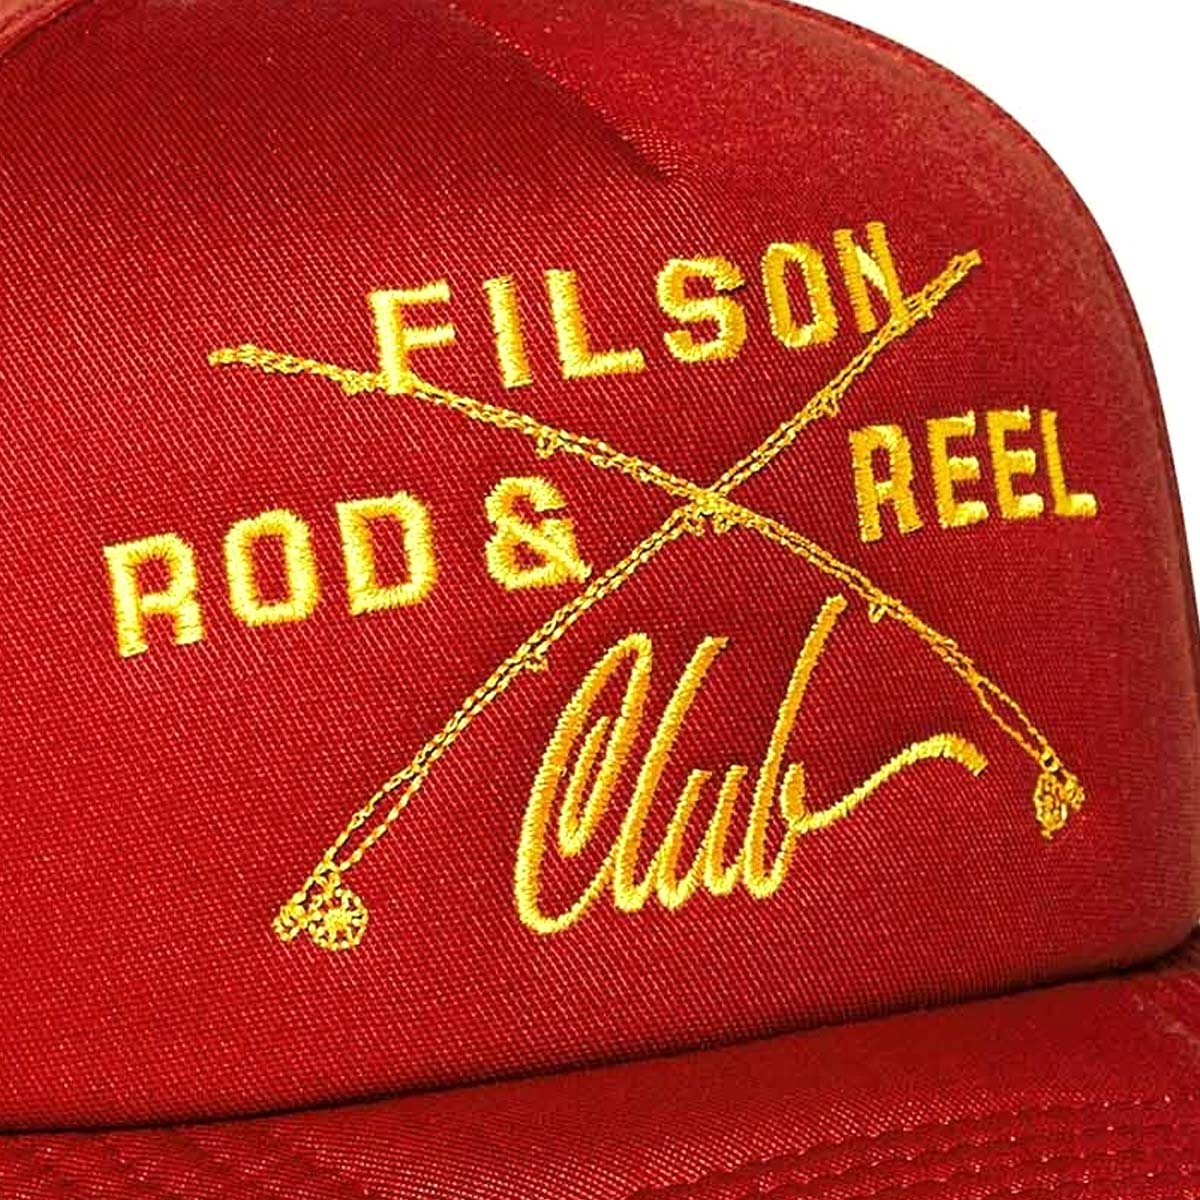 Filson Harvester Cap Rust/Rod And Reel Club, ein klassisches Five-Panel-Cap mit vorgeformtem Schirm und verstellbarem Riemen, das vor den Elementen schützt